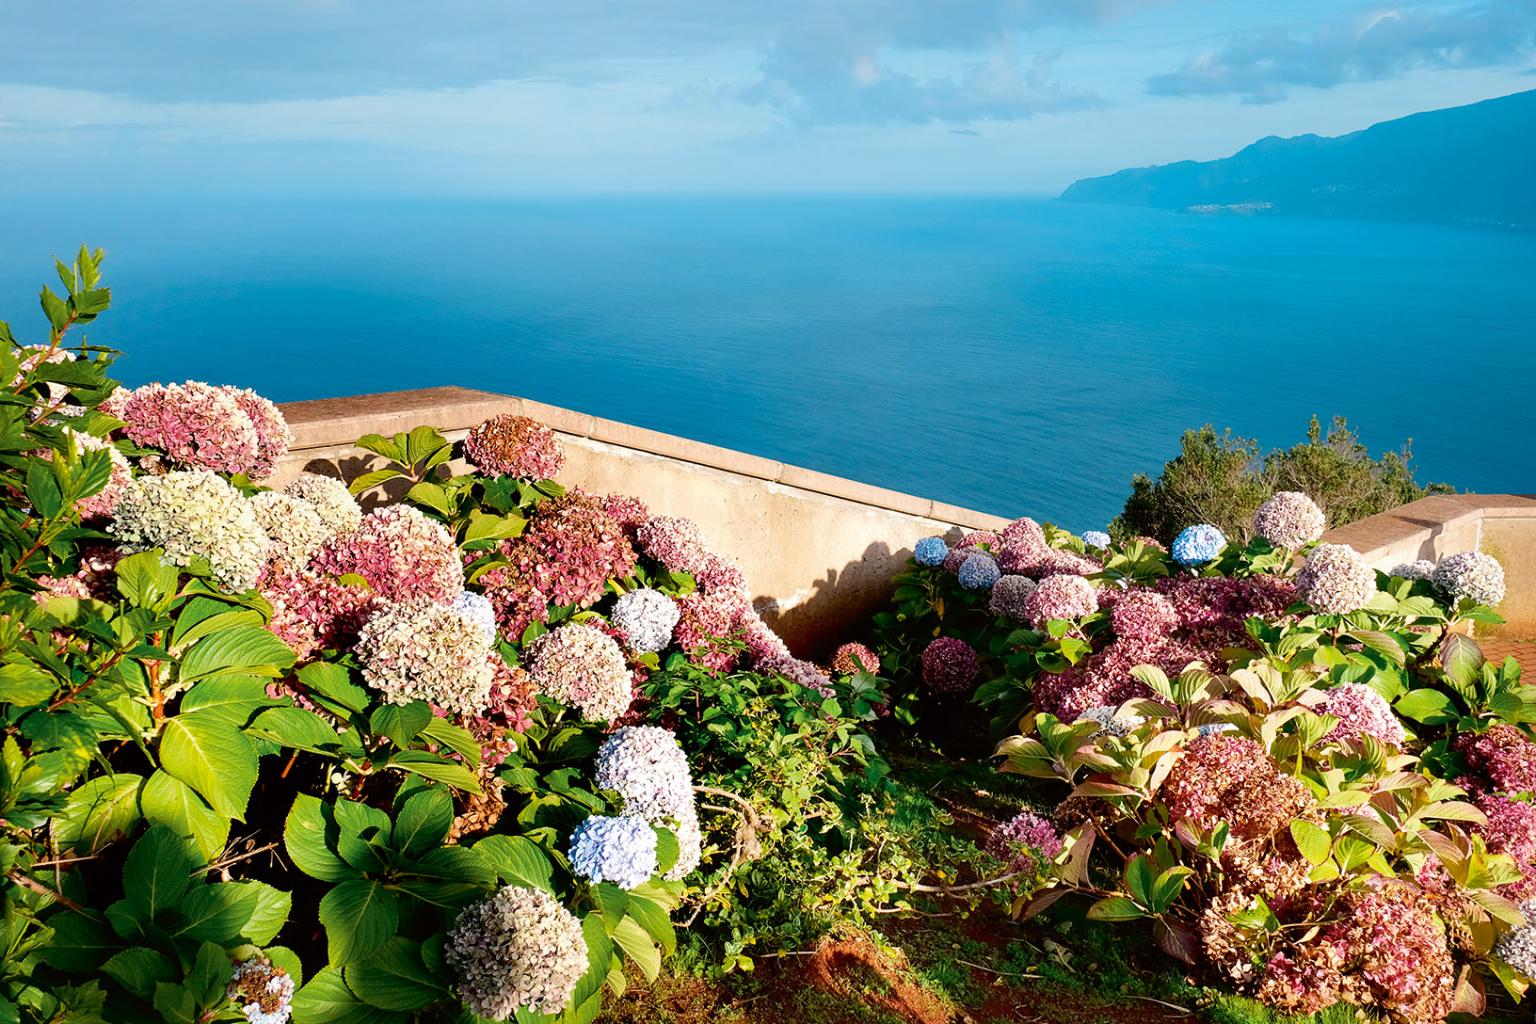  Madera jest nazywana wyspą kwiatów. Na przełomie kwietnia i maja odbywa się w Funchal Festiwal Kwiatów – Festa da Flor. (Fot. Anna Janowska)